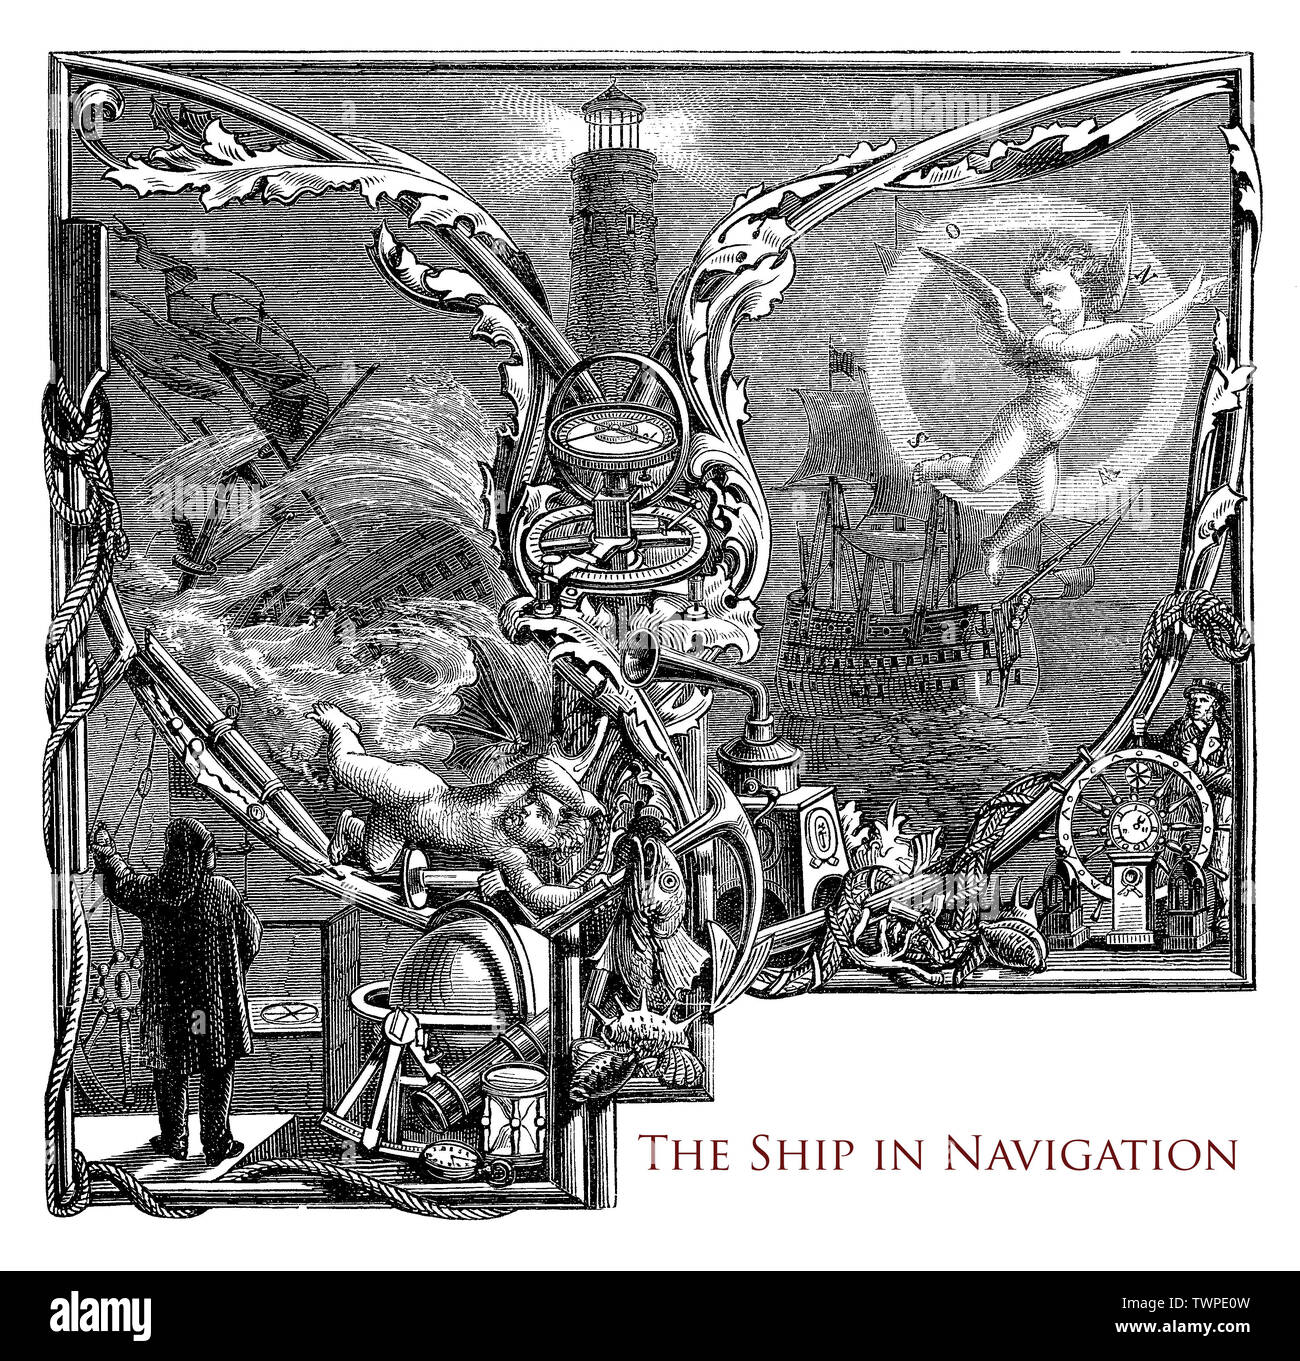 Typographie : le navire en navigation chapitre 19e siècle, l'équipement maritime, un phare, des voiliers, des marins à la dérive, tempête et beau temps, mythologique puttos Banque D'Images